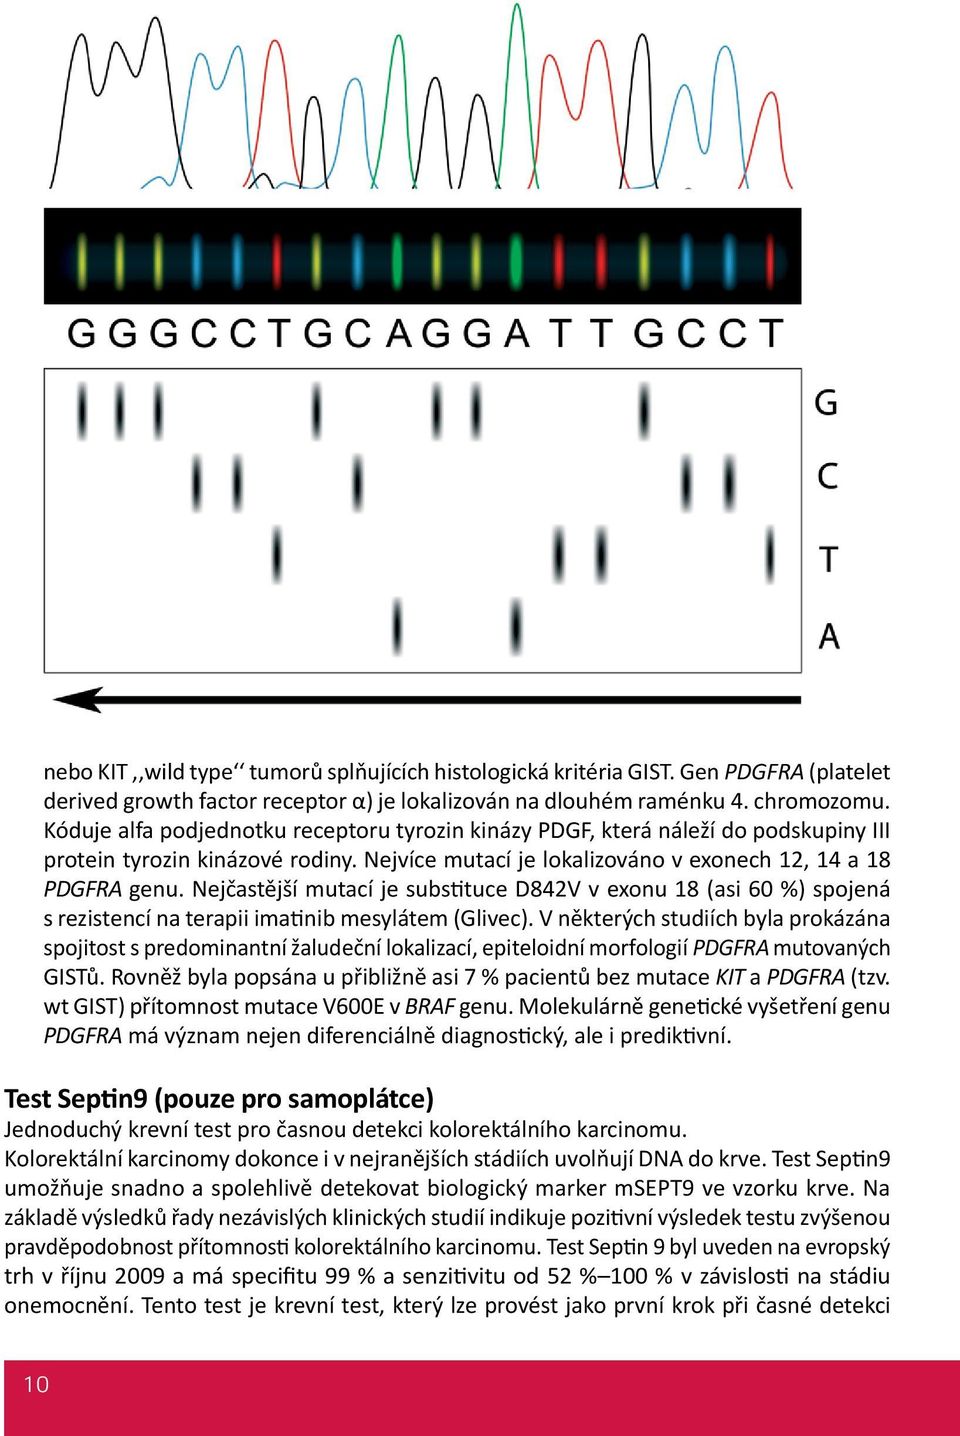 Nejčastější mutací je substituce D842V v exonu 18 (asi 60 %) spojená s rezistencí na terapii imatinib mesylátem (Glivec).